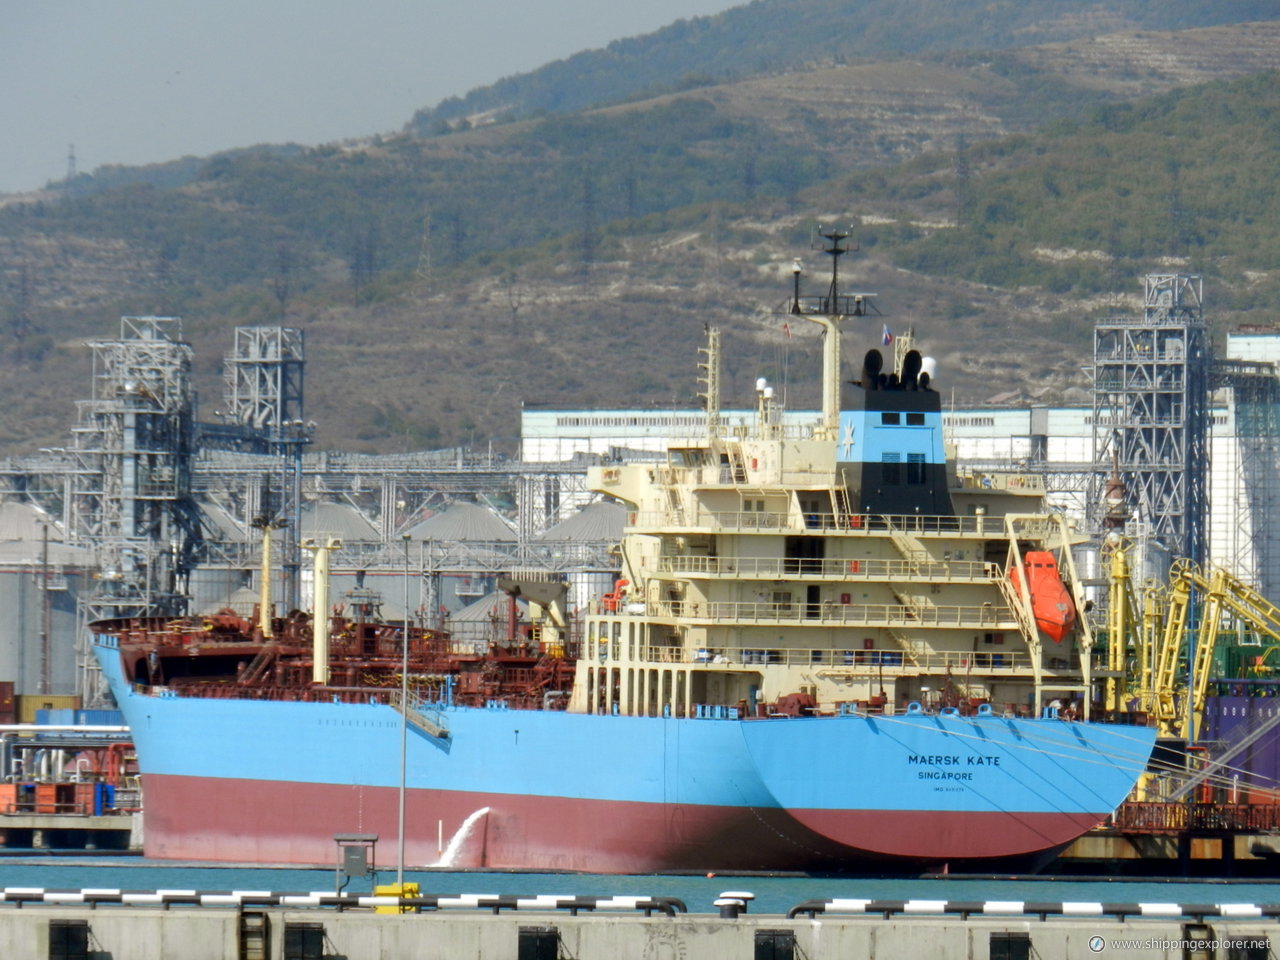 Maersk Kate